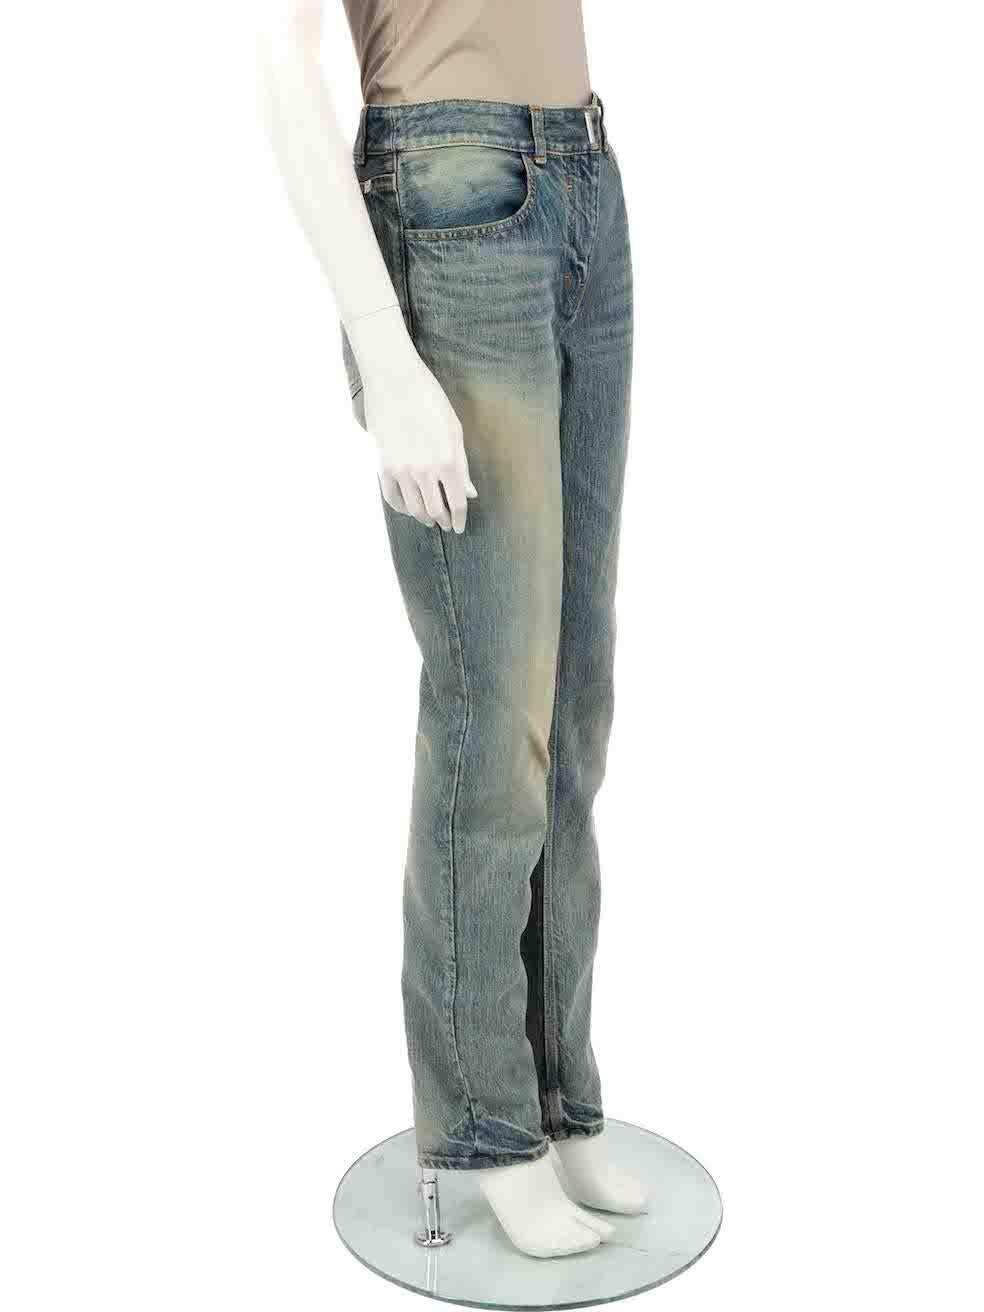 CONDIT ist gut. Allgemeine Abnutzung der Jeans ist offensichtlich. Mäßige Gebrauchsspuren auf der Vorder- und Rückseite mit verfärbten Stellen - vor allem an den Manschetten dieses gebrauchten Givenchy Designer-Wiederverkaufsartikels.
